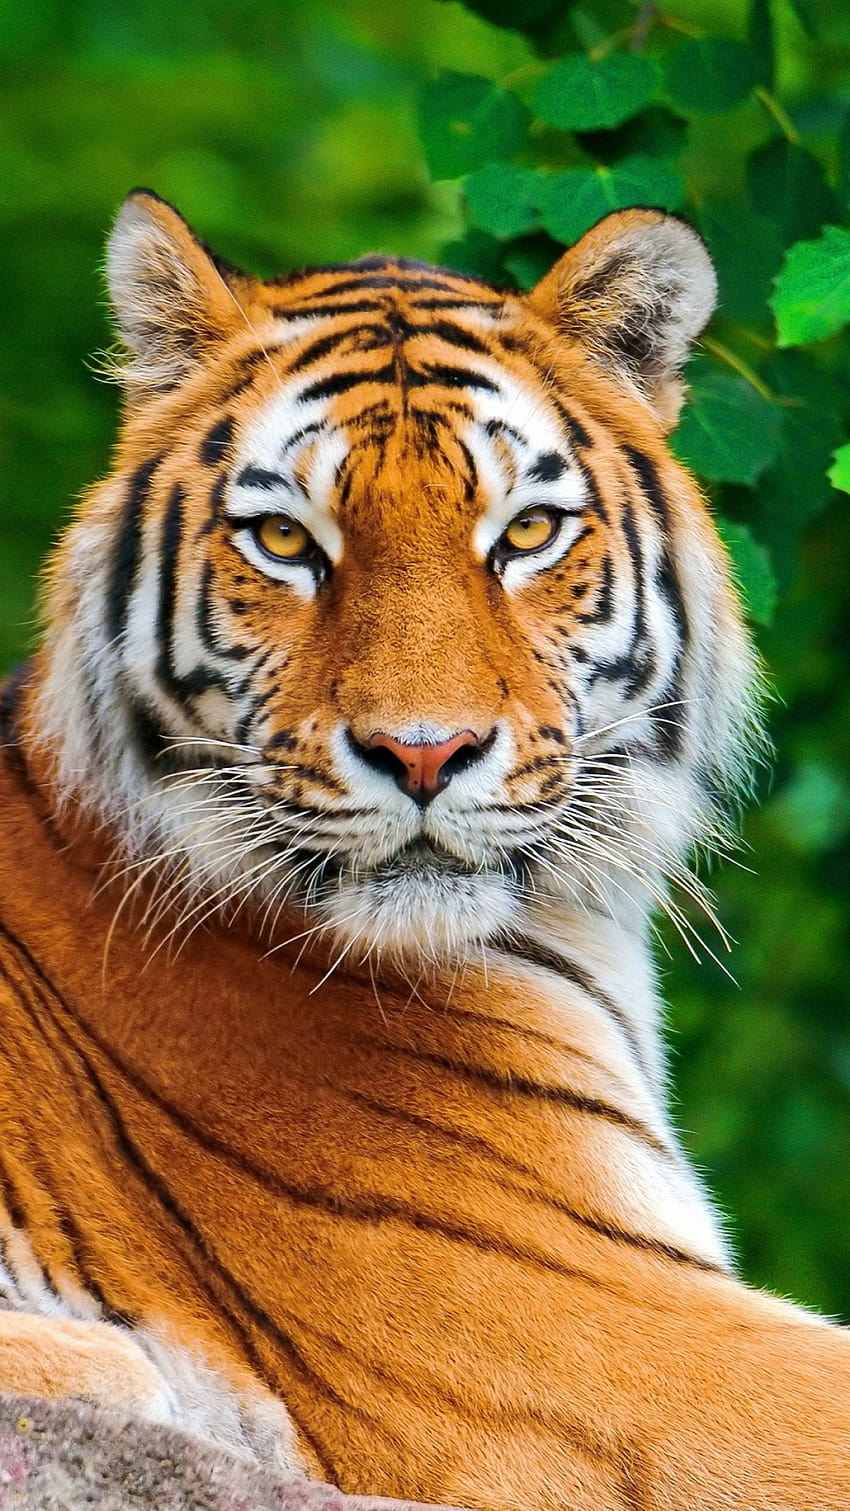 Download wallpaper 2560x1440 tiger, tigers, big cat, predator widescreen  16:9 hd background